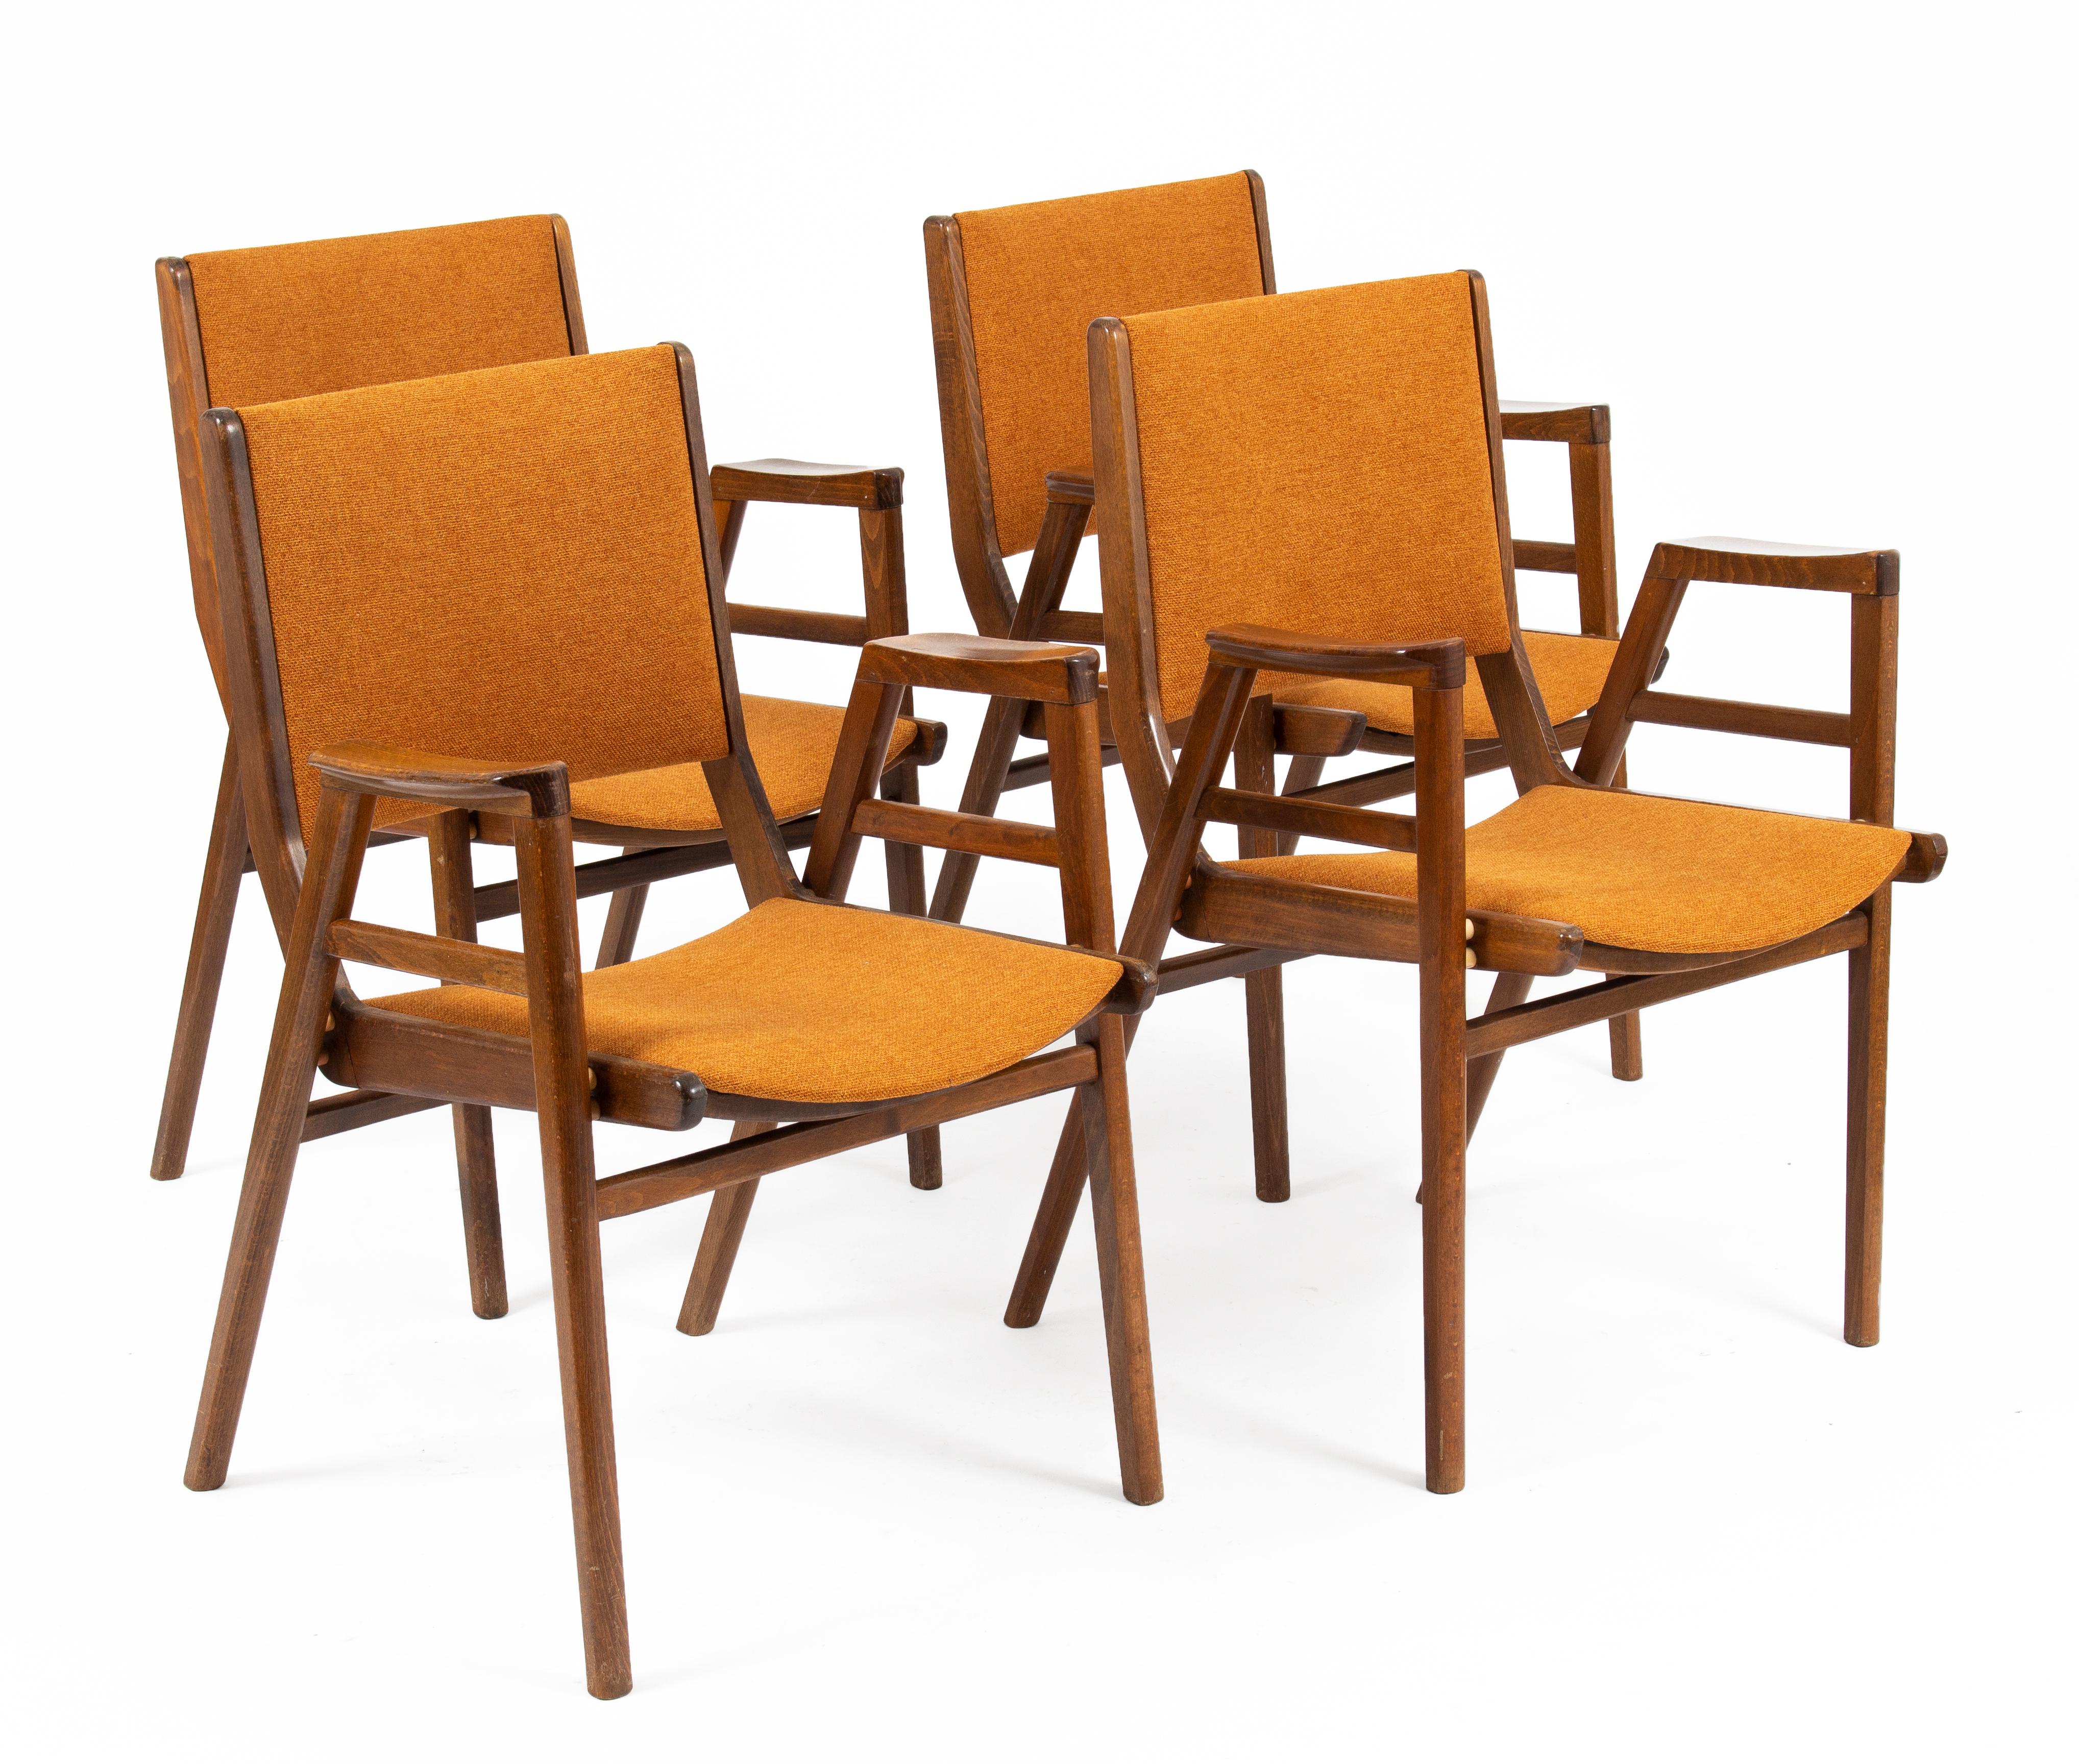 4 chaises empilables conçues par František Jirák.
Les pièces ont été fabriquées dans les années 1960 en Tchécoslovaquie.
Les pièces de style Mid-Century Modern complètent tout espace contemporain ou classique, elles sont confortables et